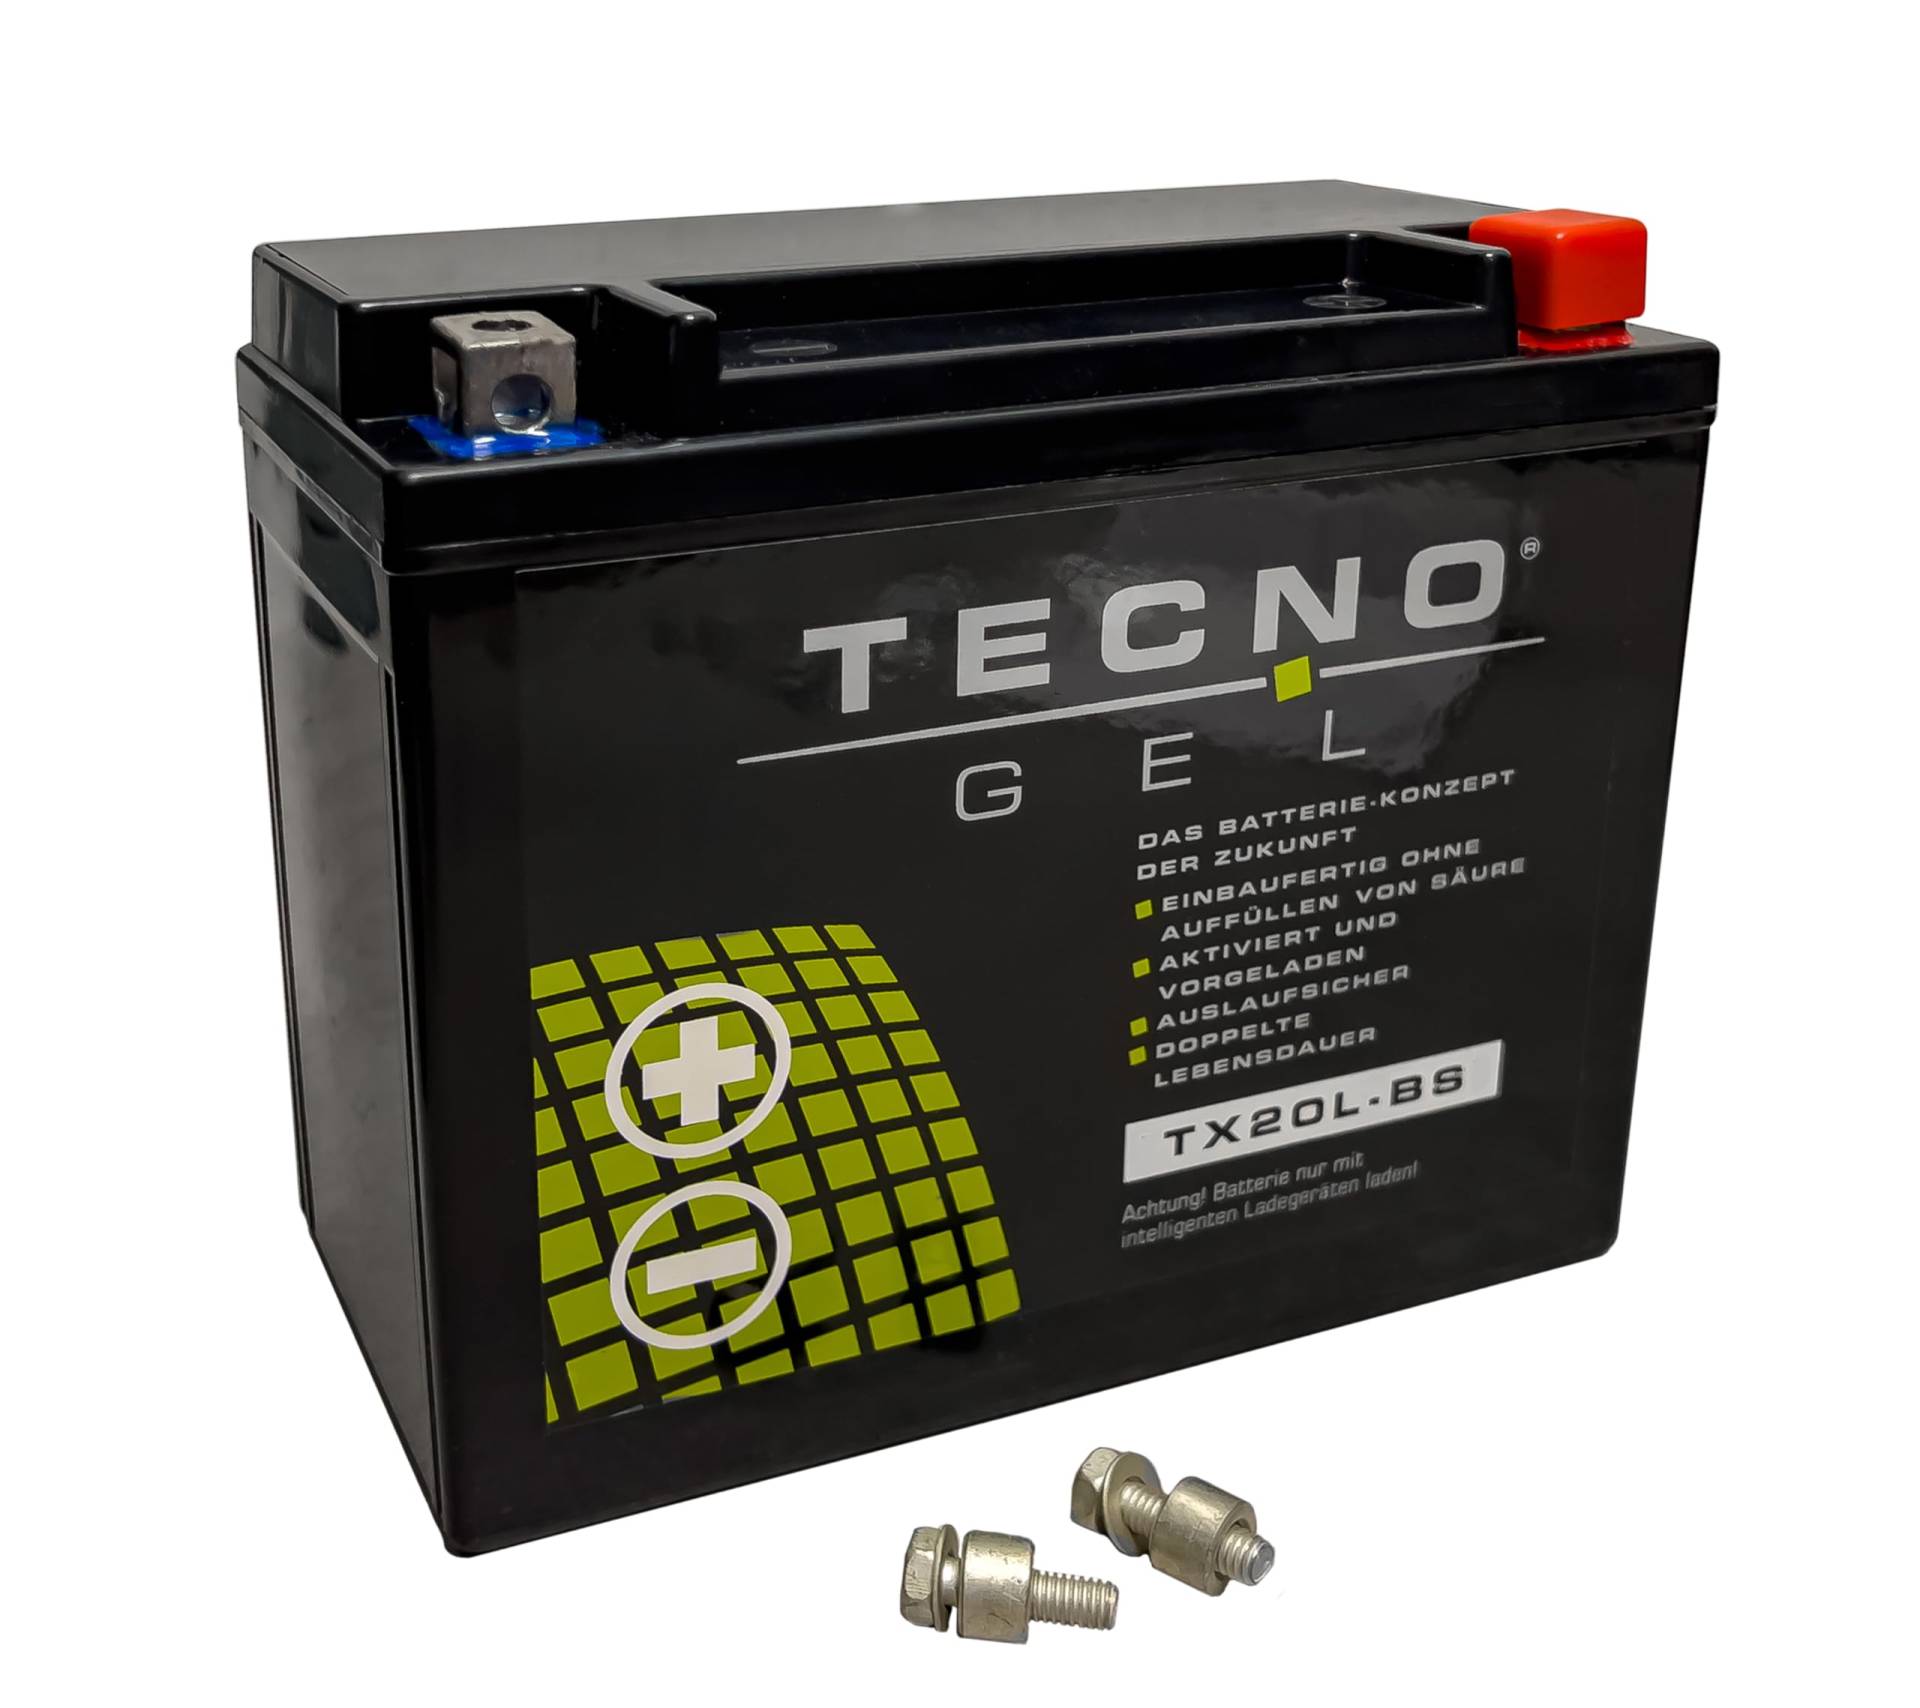 TECNO-GEL Motorrad-Batterie für YTX20L-BS, 12V Gel-Batterie 20Ah (DIN 82000), 175x87x155 mm von Wirth-Federn